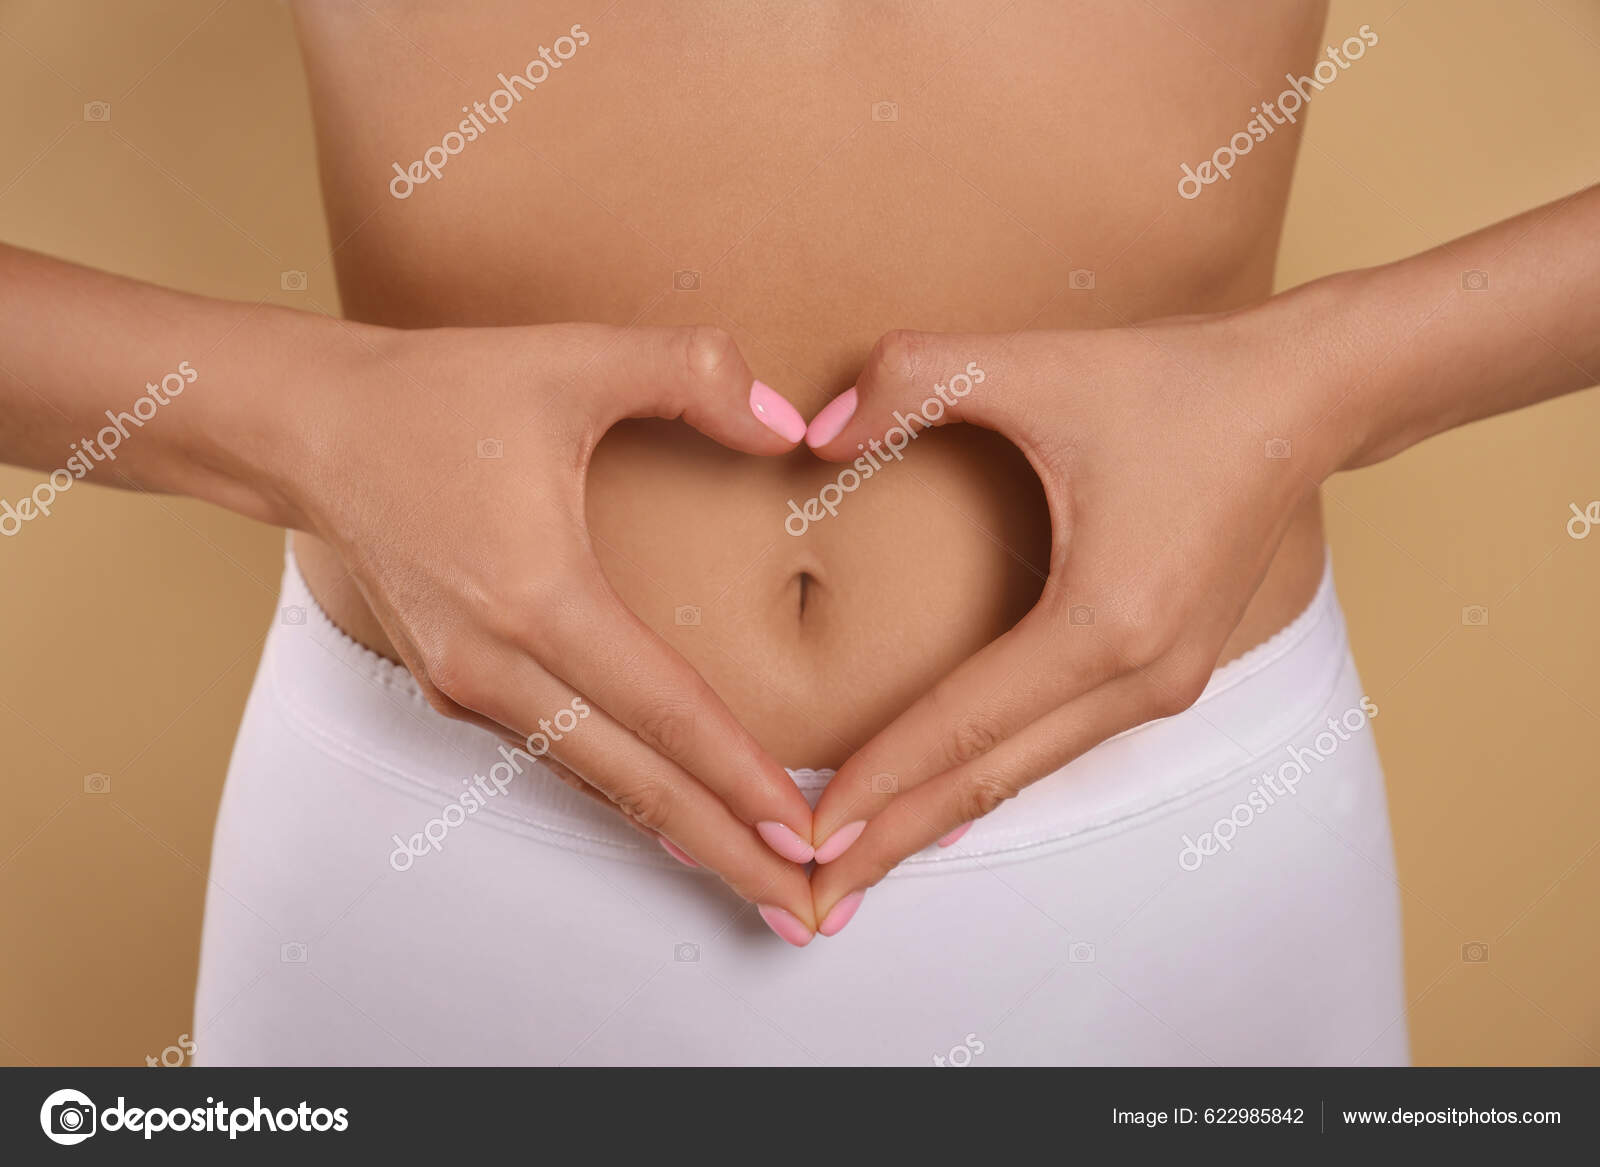 https://st5.depositphotos.com/16122460/62298/i/1600/depositphotos_622985842-stock-photo-woman-underwear-making-heart-hands.jpg